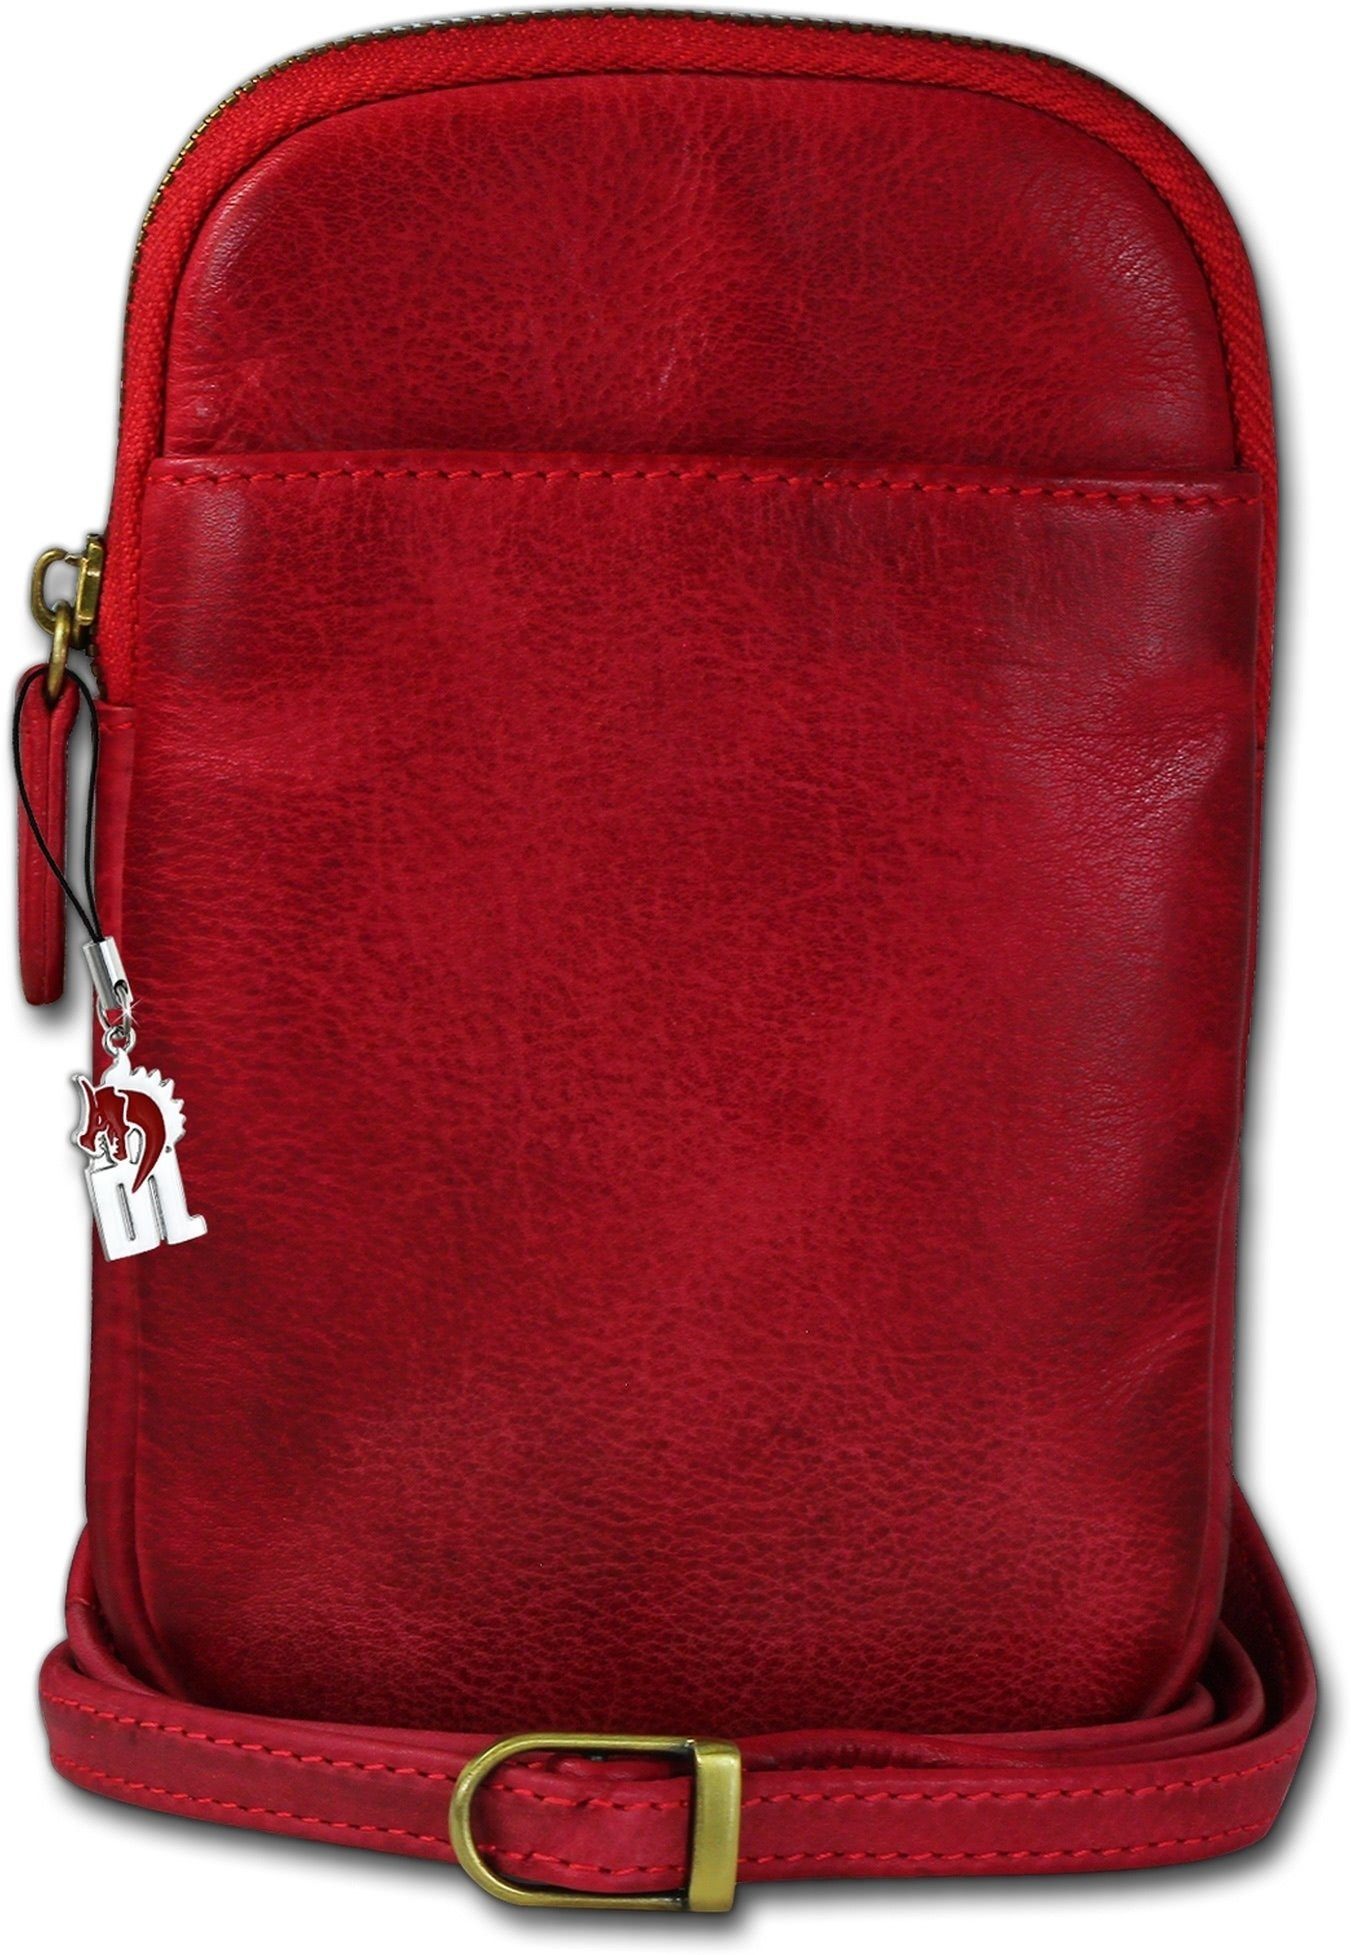 DrachenLeder Umhängetasche 13cm Tasche unisex (Umhängetasche, Damen ca. Umhängetasche), Handtasche, Umhängetasche Echtleder Handtasche rot, Größe DrachenLeder